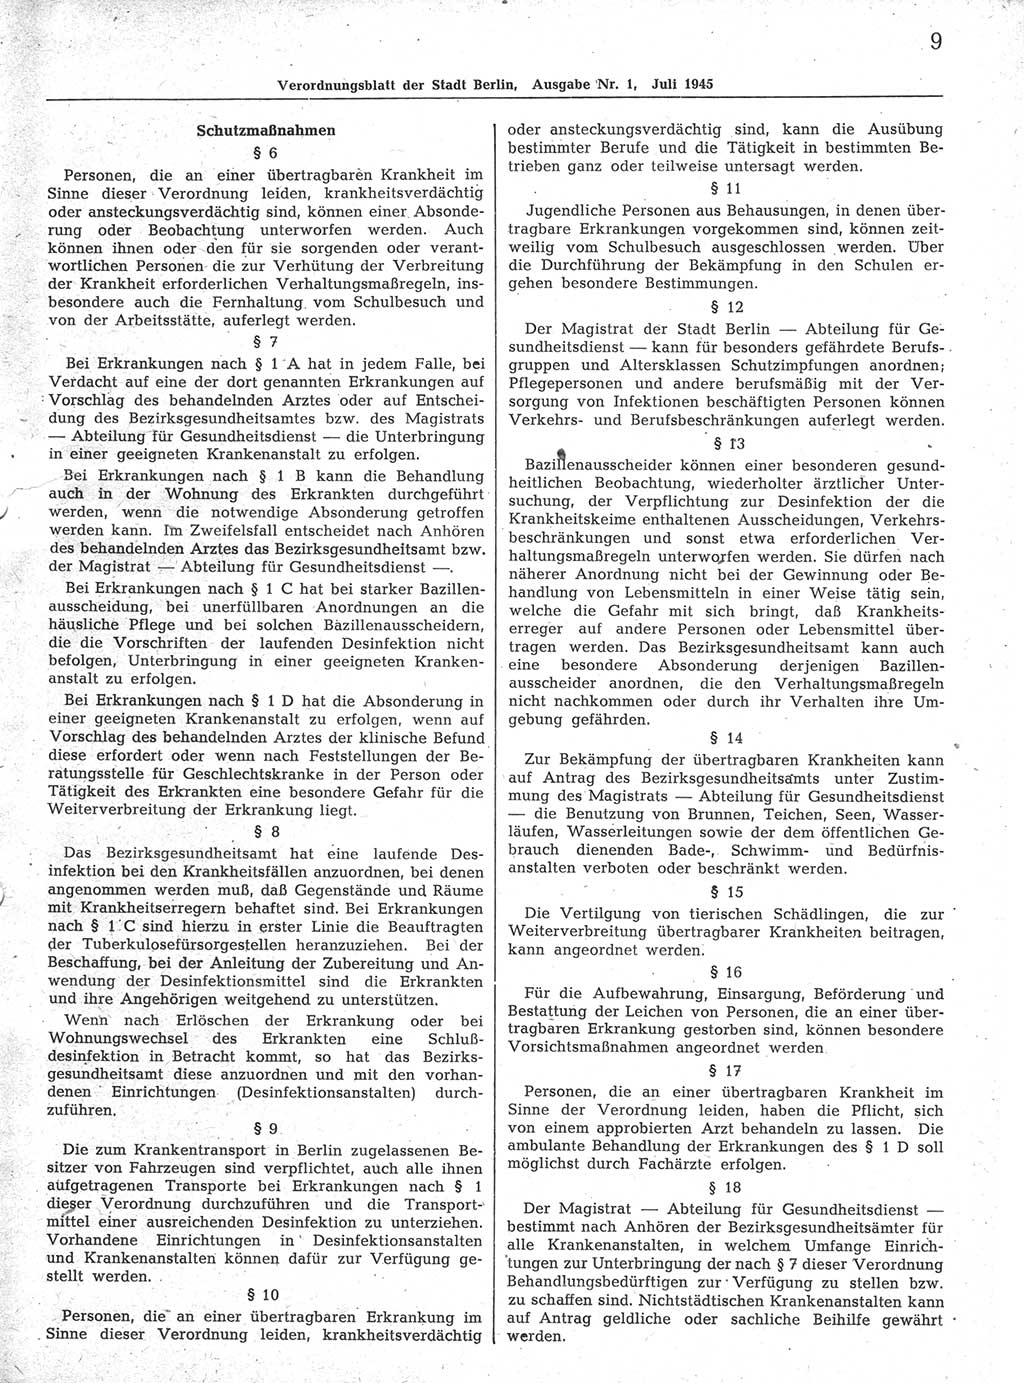 Verordnungsblatt (VOBl.) der Stadt Berlin 1945, Seite 9 (VOBl. Bln. 1945, S. 9)